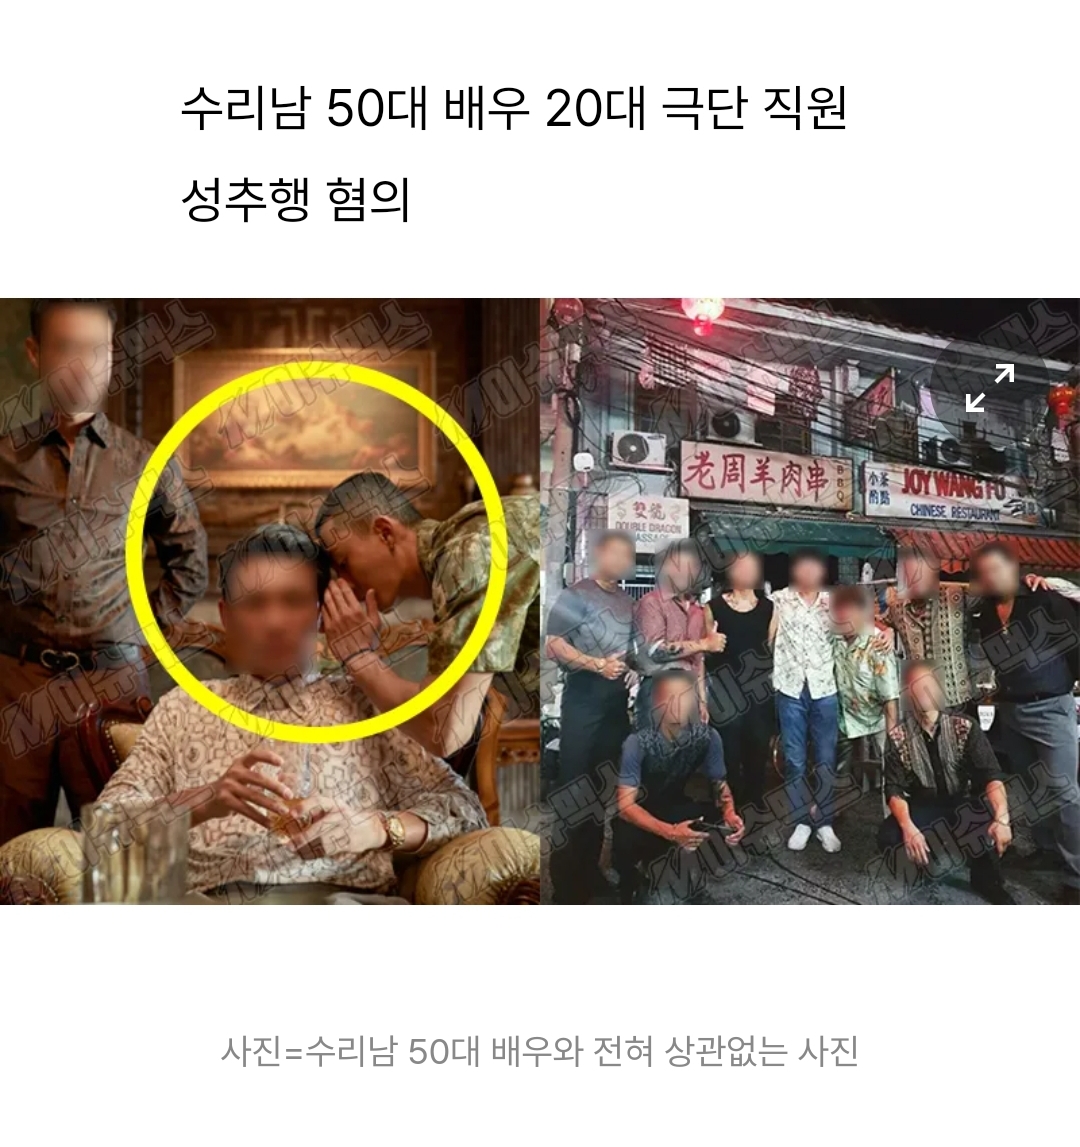 “손만 잡았다” 수리남 50대 배우 단역 누구 정체 소름 돋는 까닭